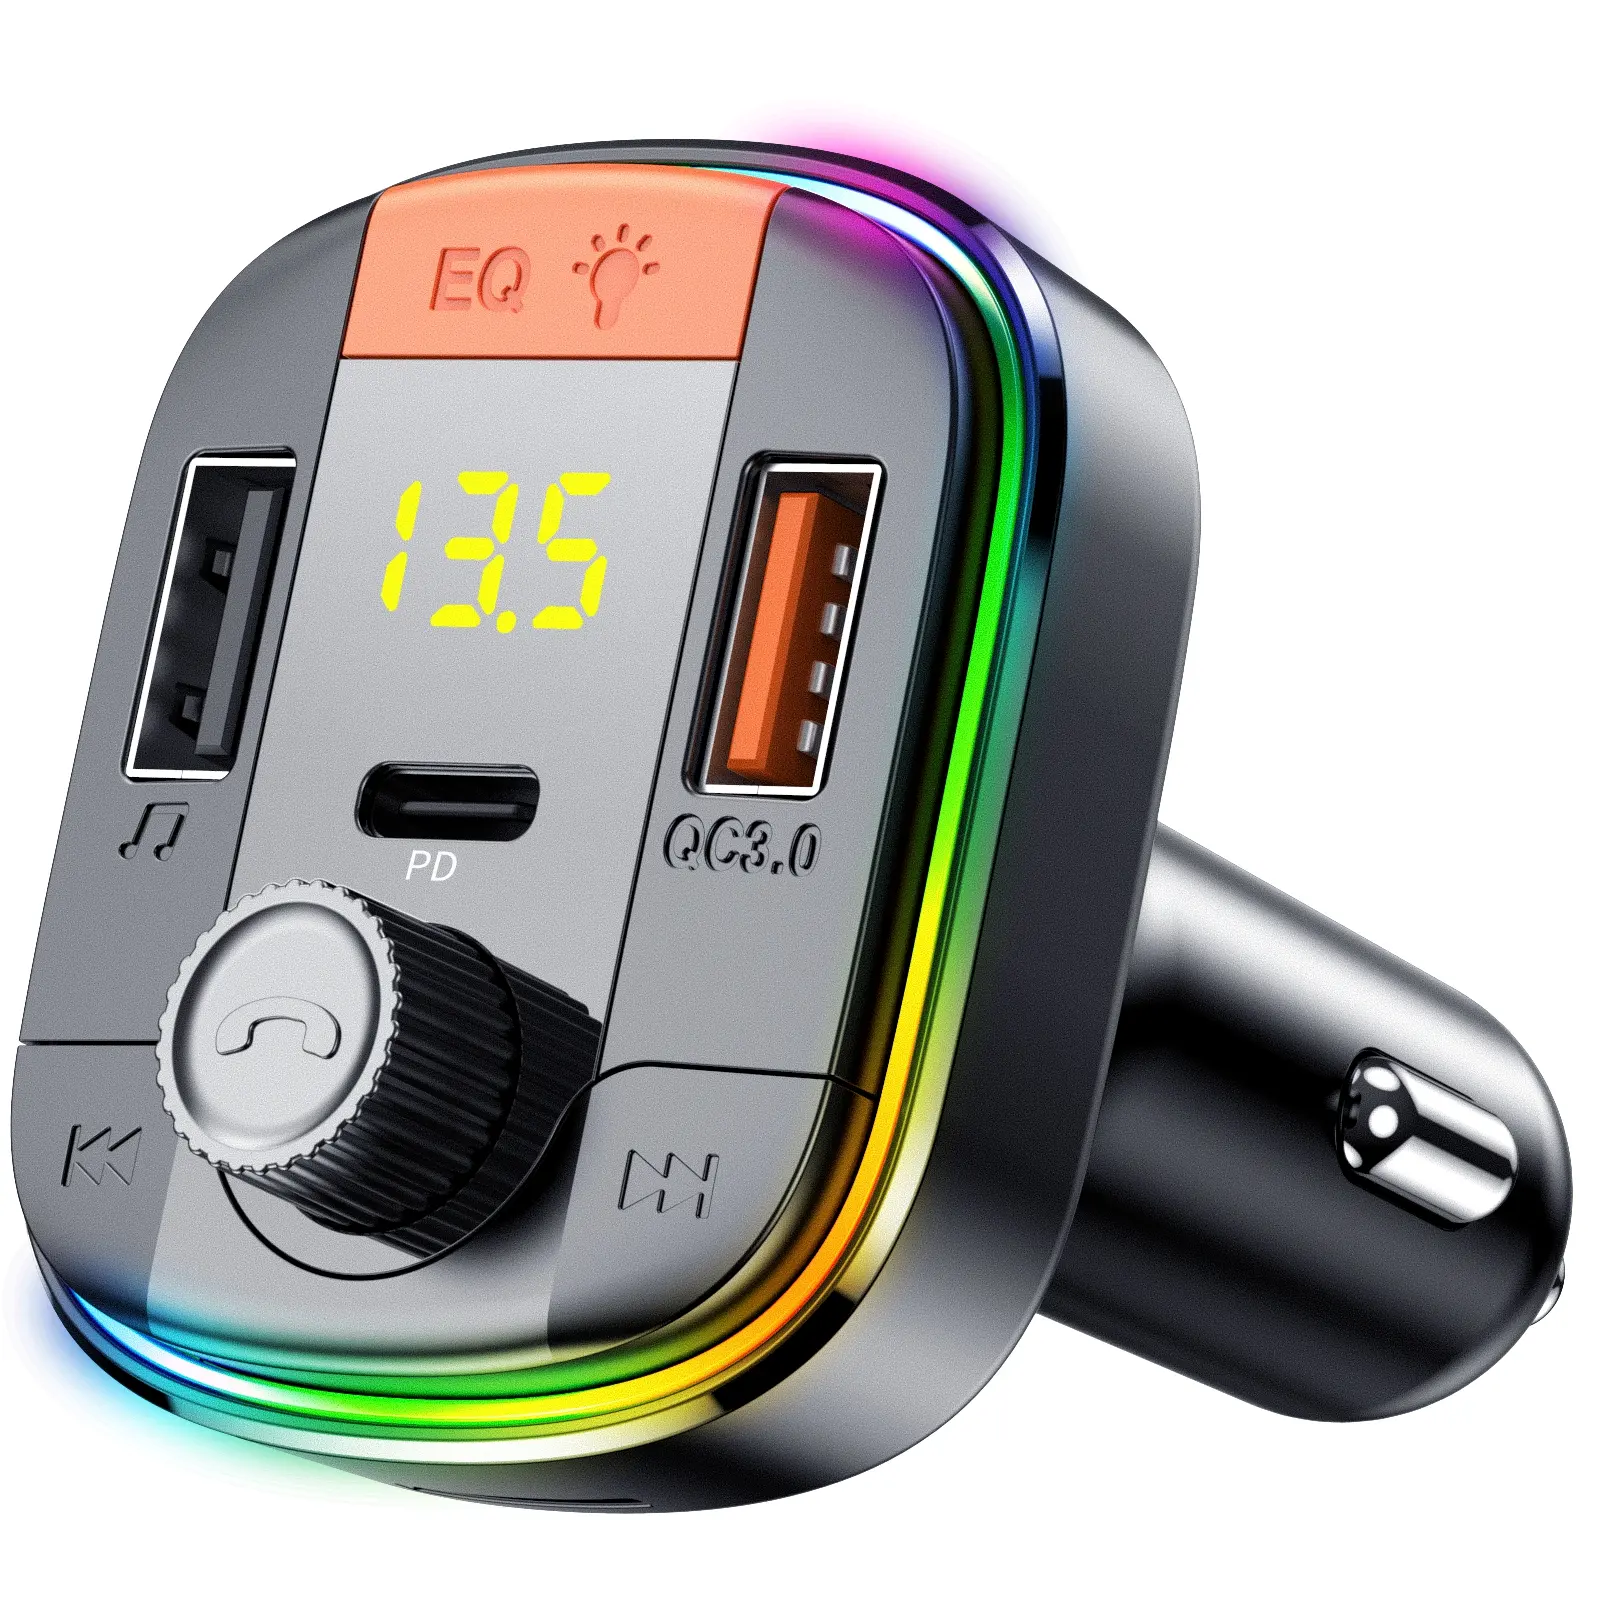 T832 नवीनतम कार MP3 संगीत प्लेयर ब्लूटूथ एफएम रेडियो ट्रांसमीटर के साथ दोहरी यूएसबी पोर्ट प्रकार-सी कार चार्जर